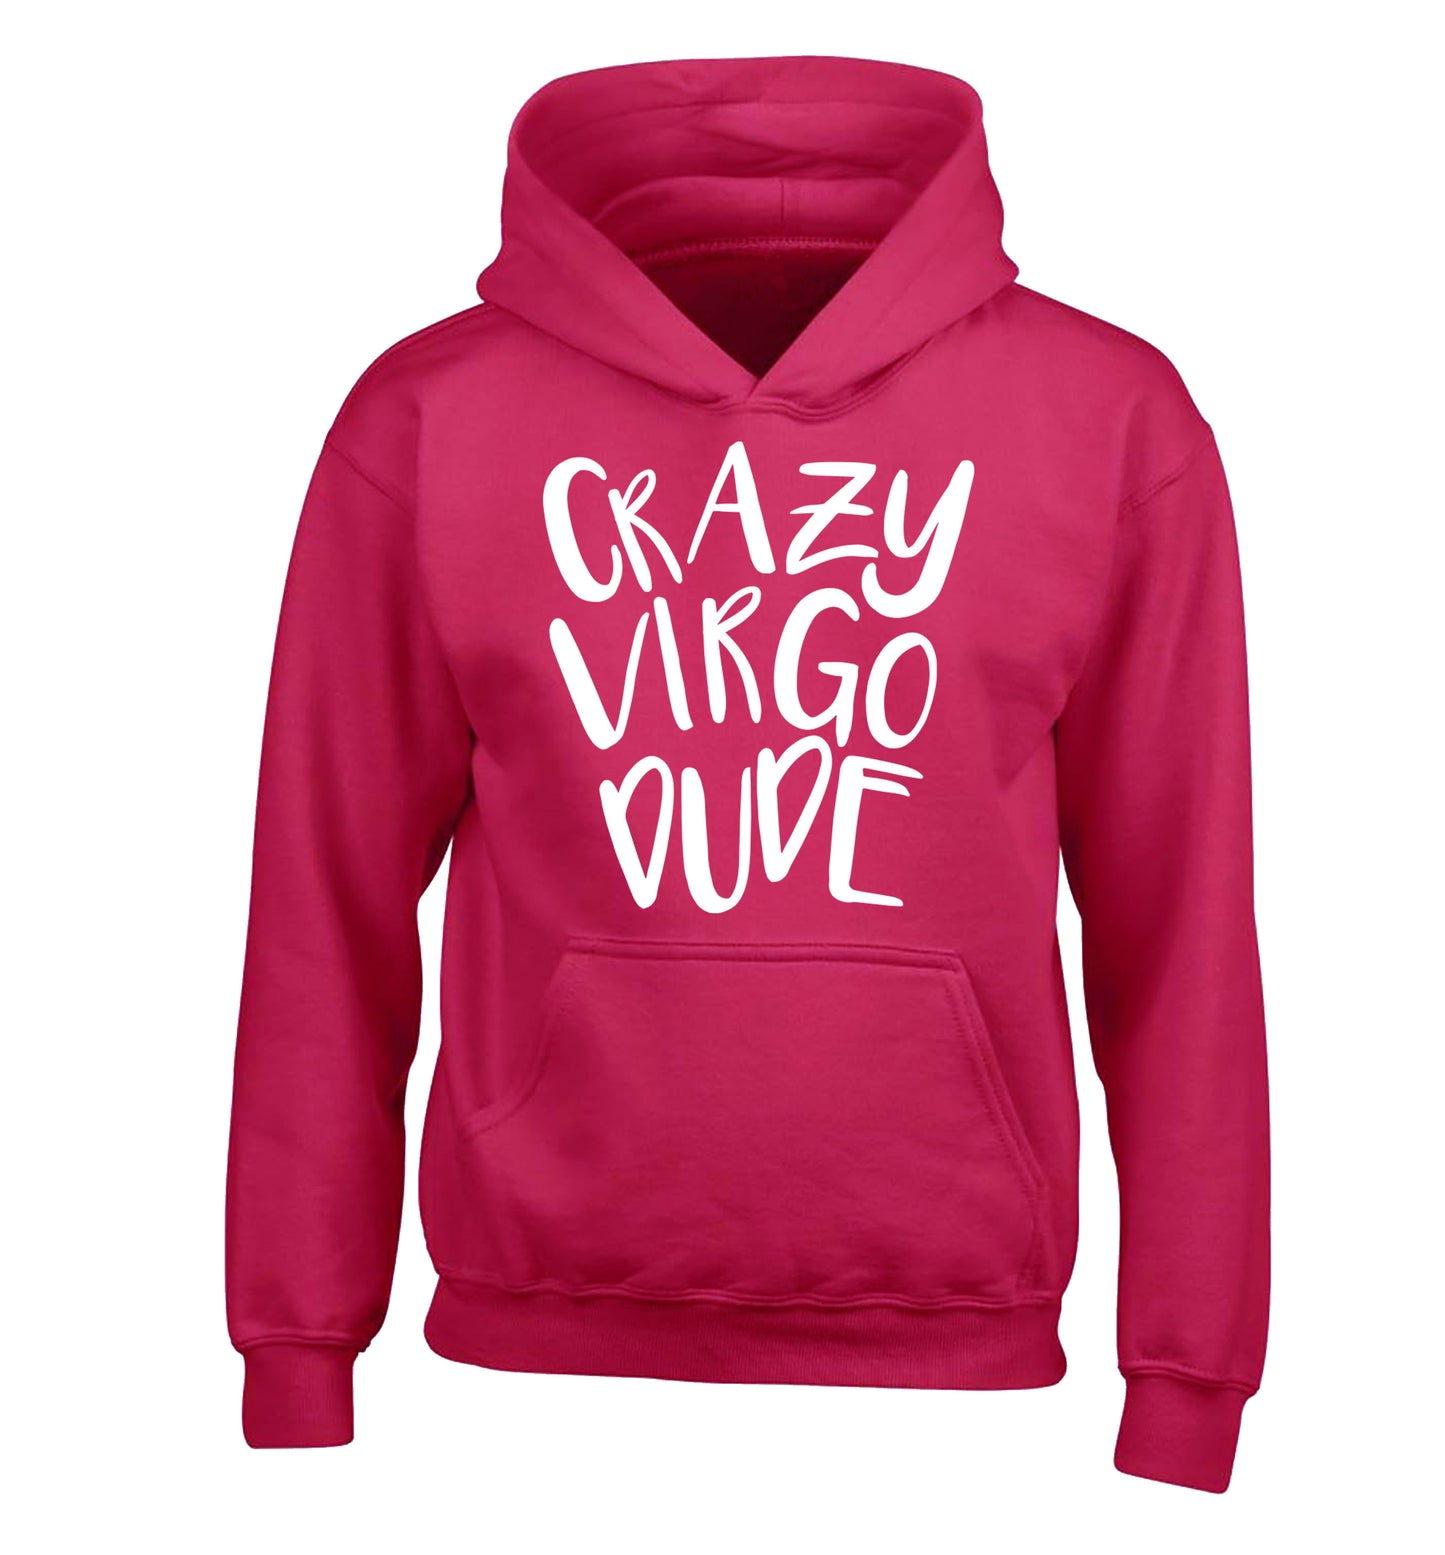 Crazy virgo dude children's pink hoodie 12-13 Years